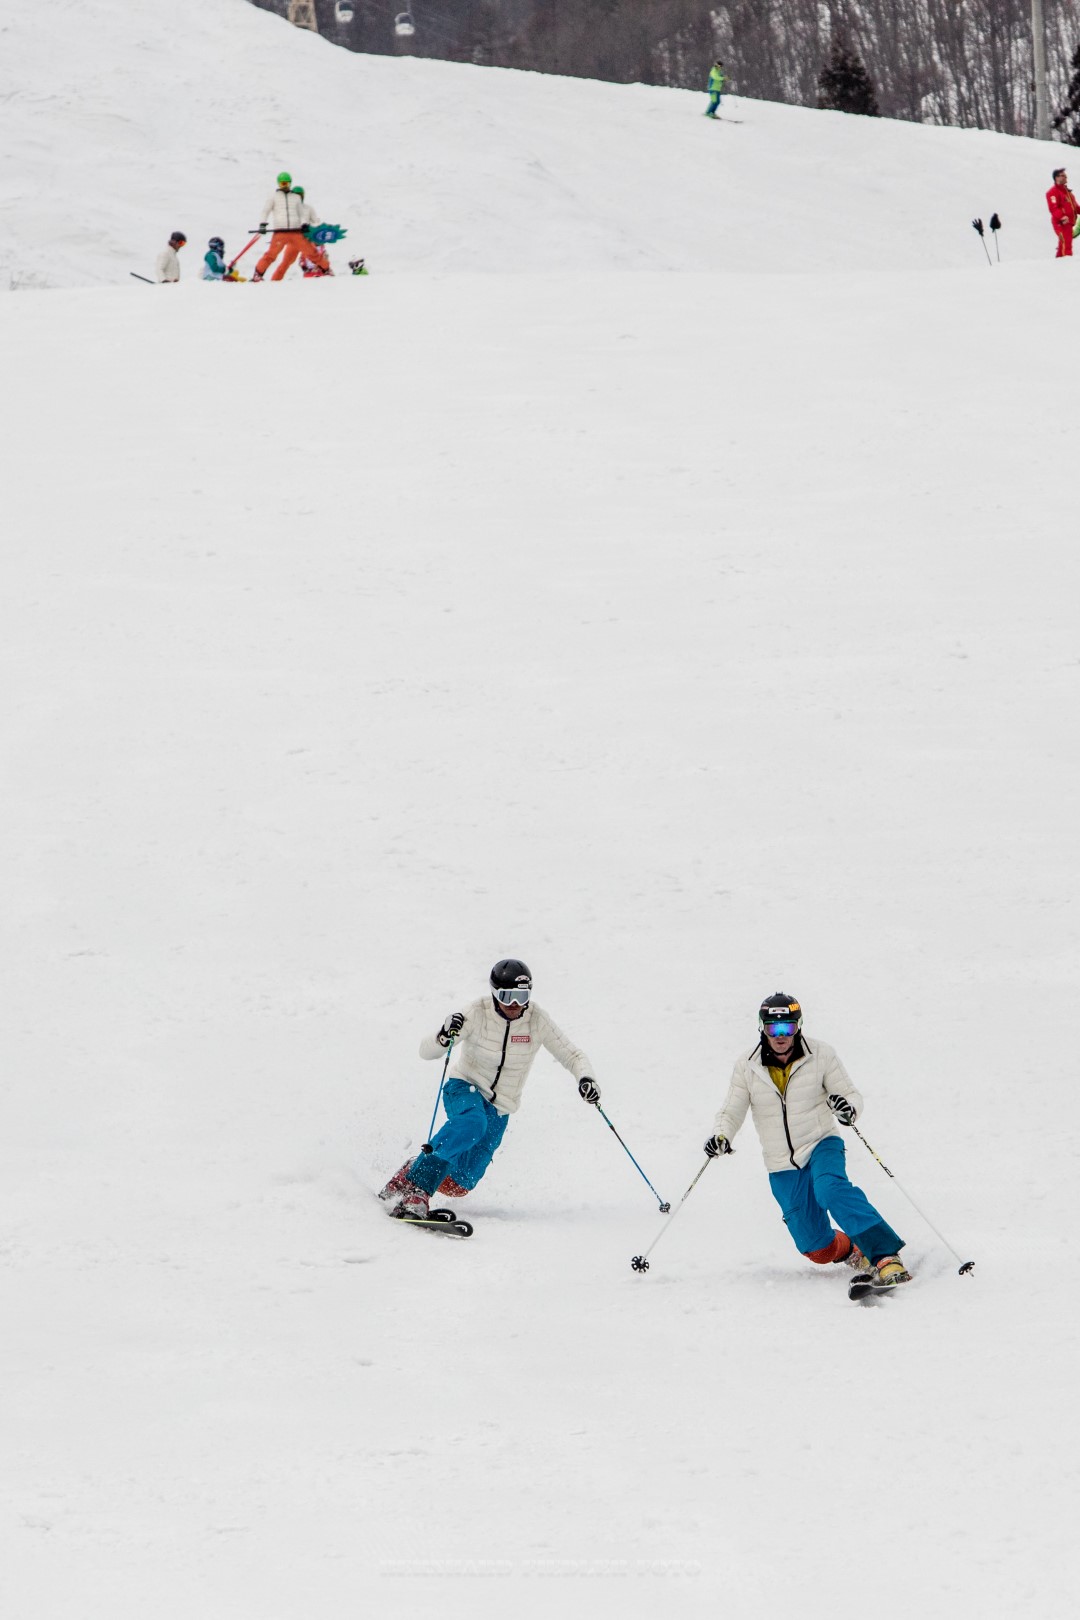 IVSI Kongress 2017 in Hakuba - zwei Skilehrer bei einer Telemark Demofahrt